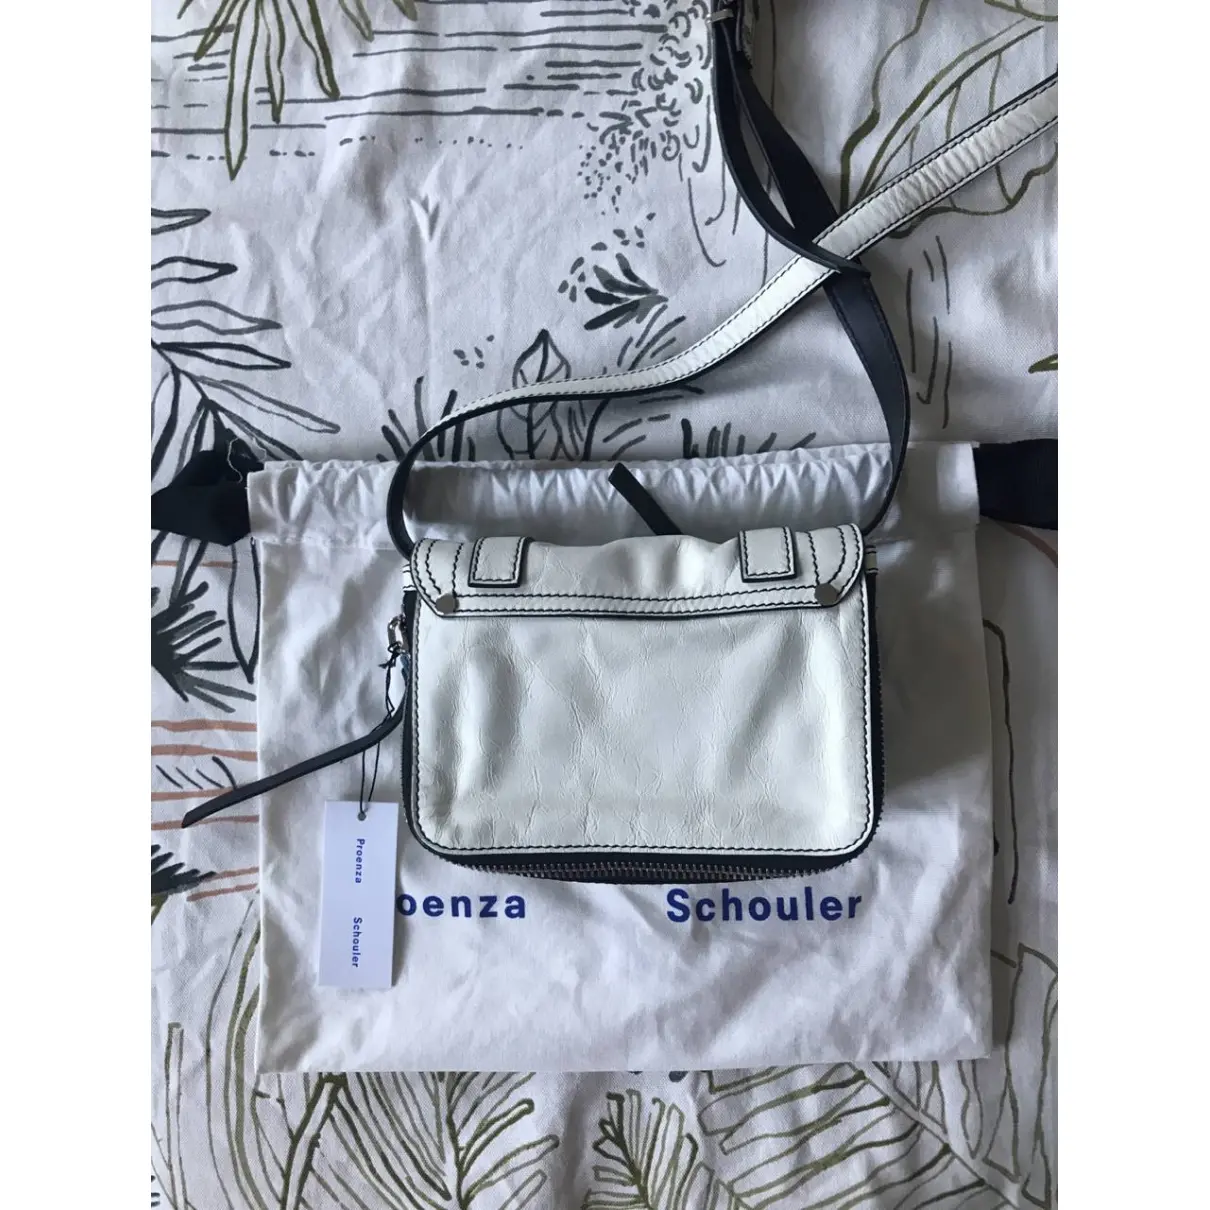 Buy Proenza Schouler PS1 leather handbag online